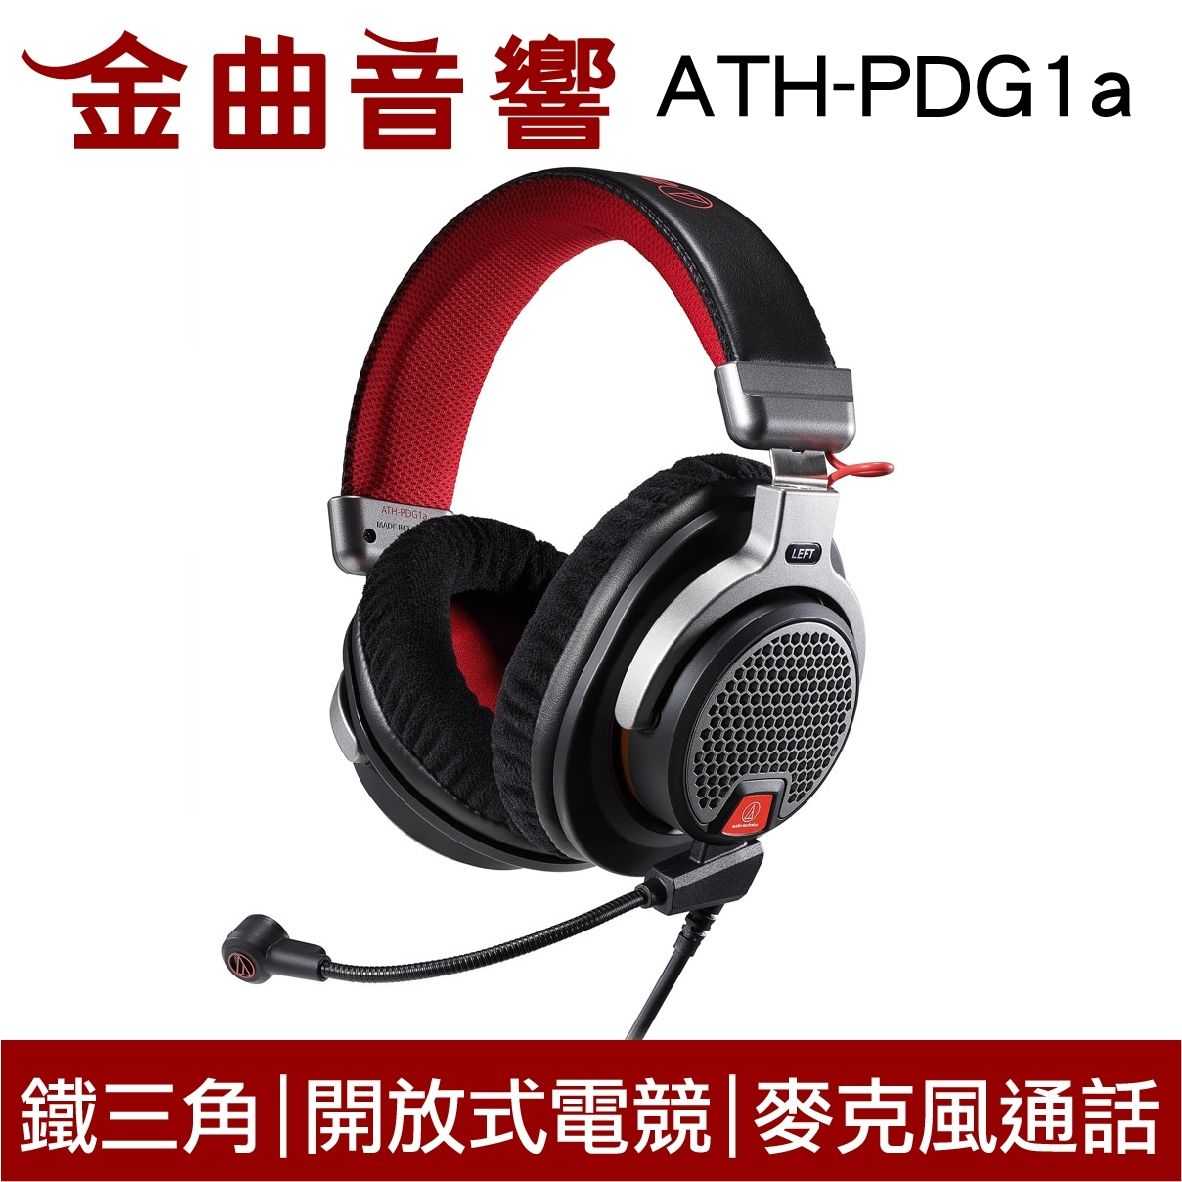 鐵三角 ATH-PDG1A 開放式 電競 耳罩式耳機 麥克風 三種可拆卸式導線 | 金曲音響